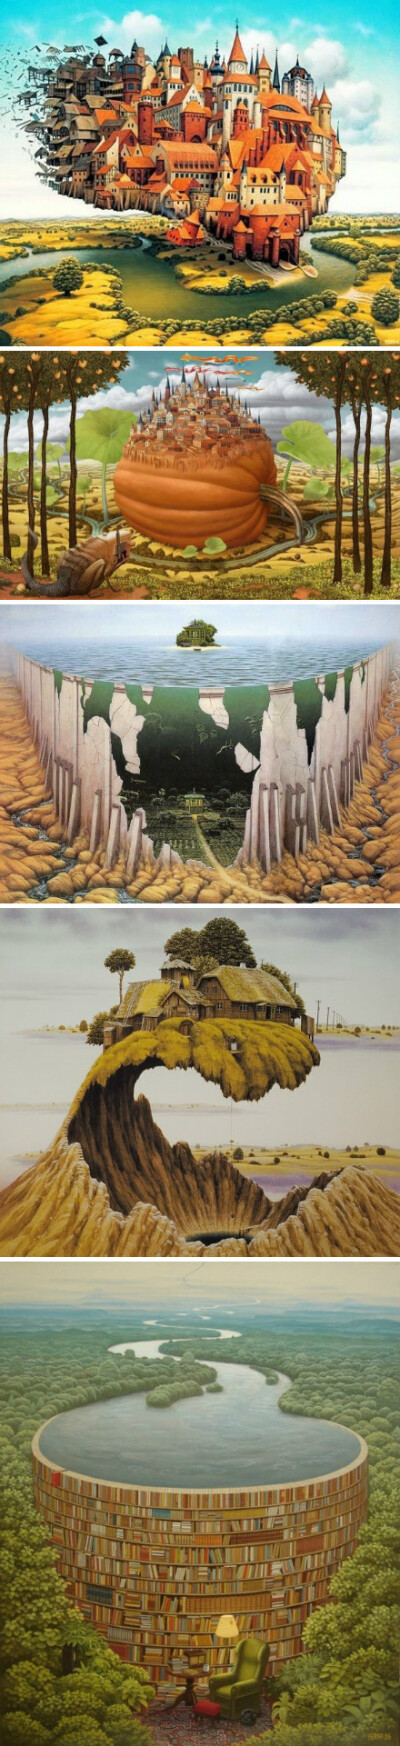 波兰超现实主义画家Jacek Yerka的几幅作品